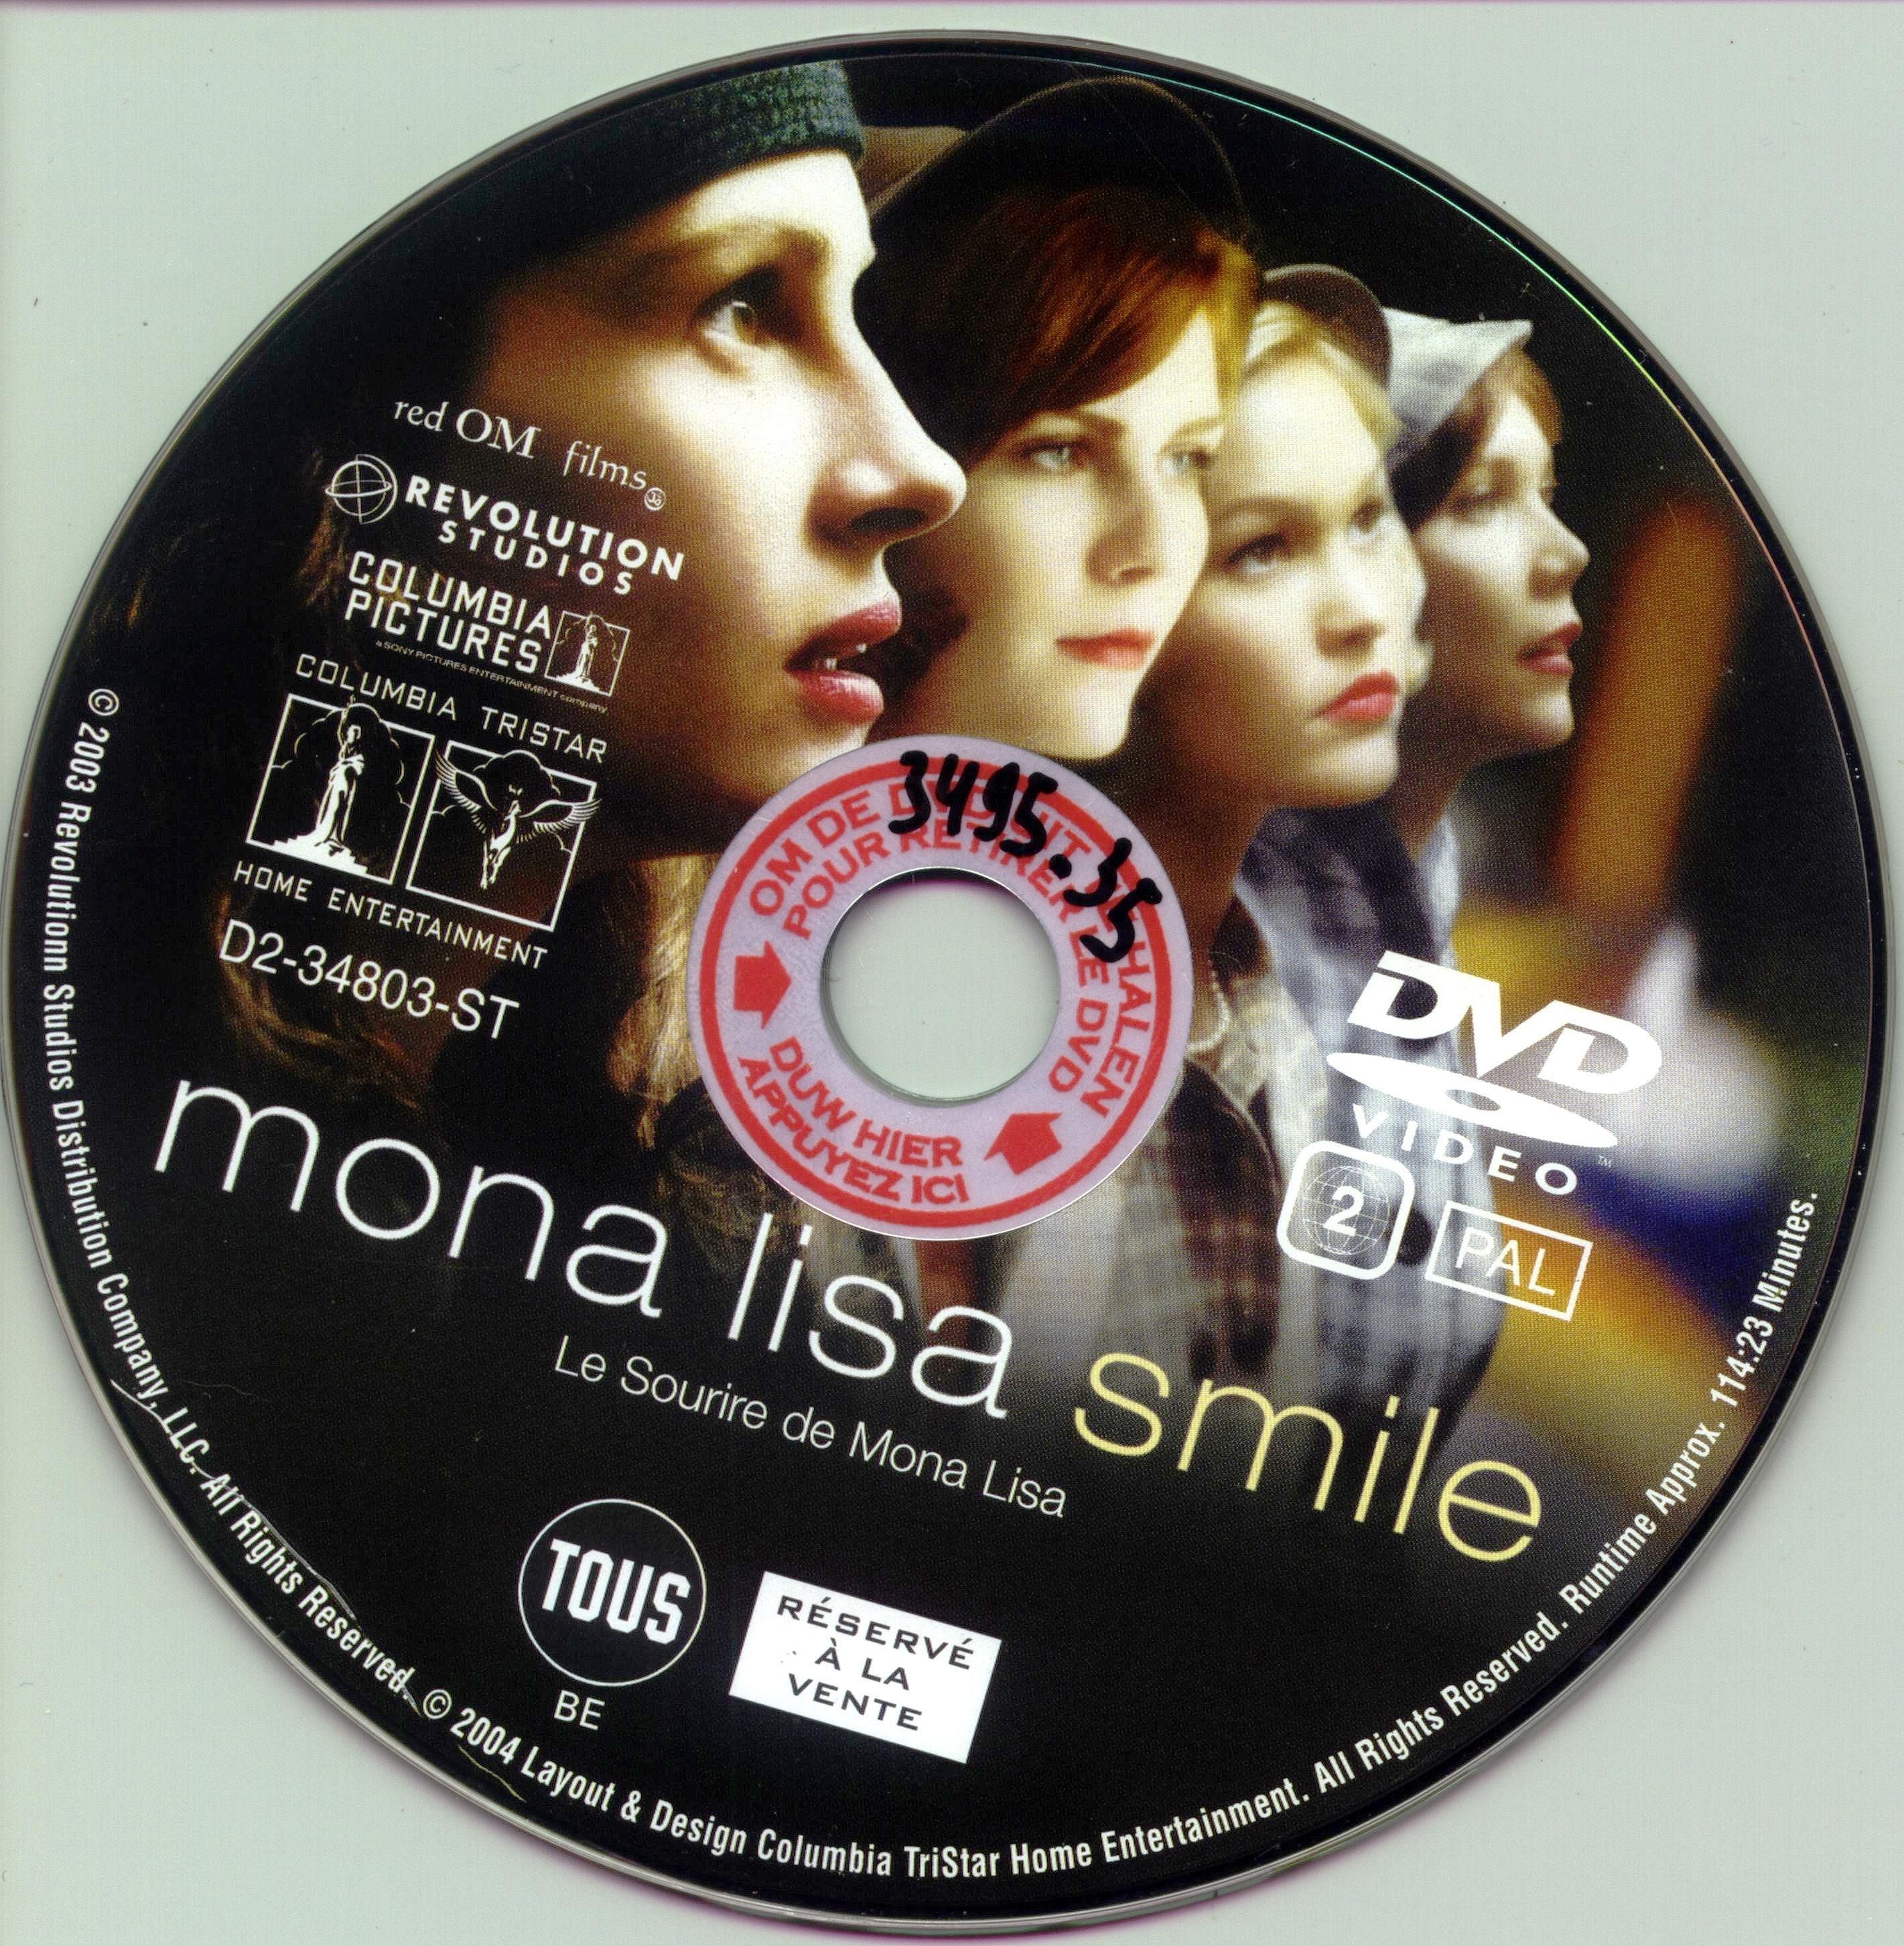 Le sourire de Mona Lisa